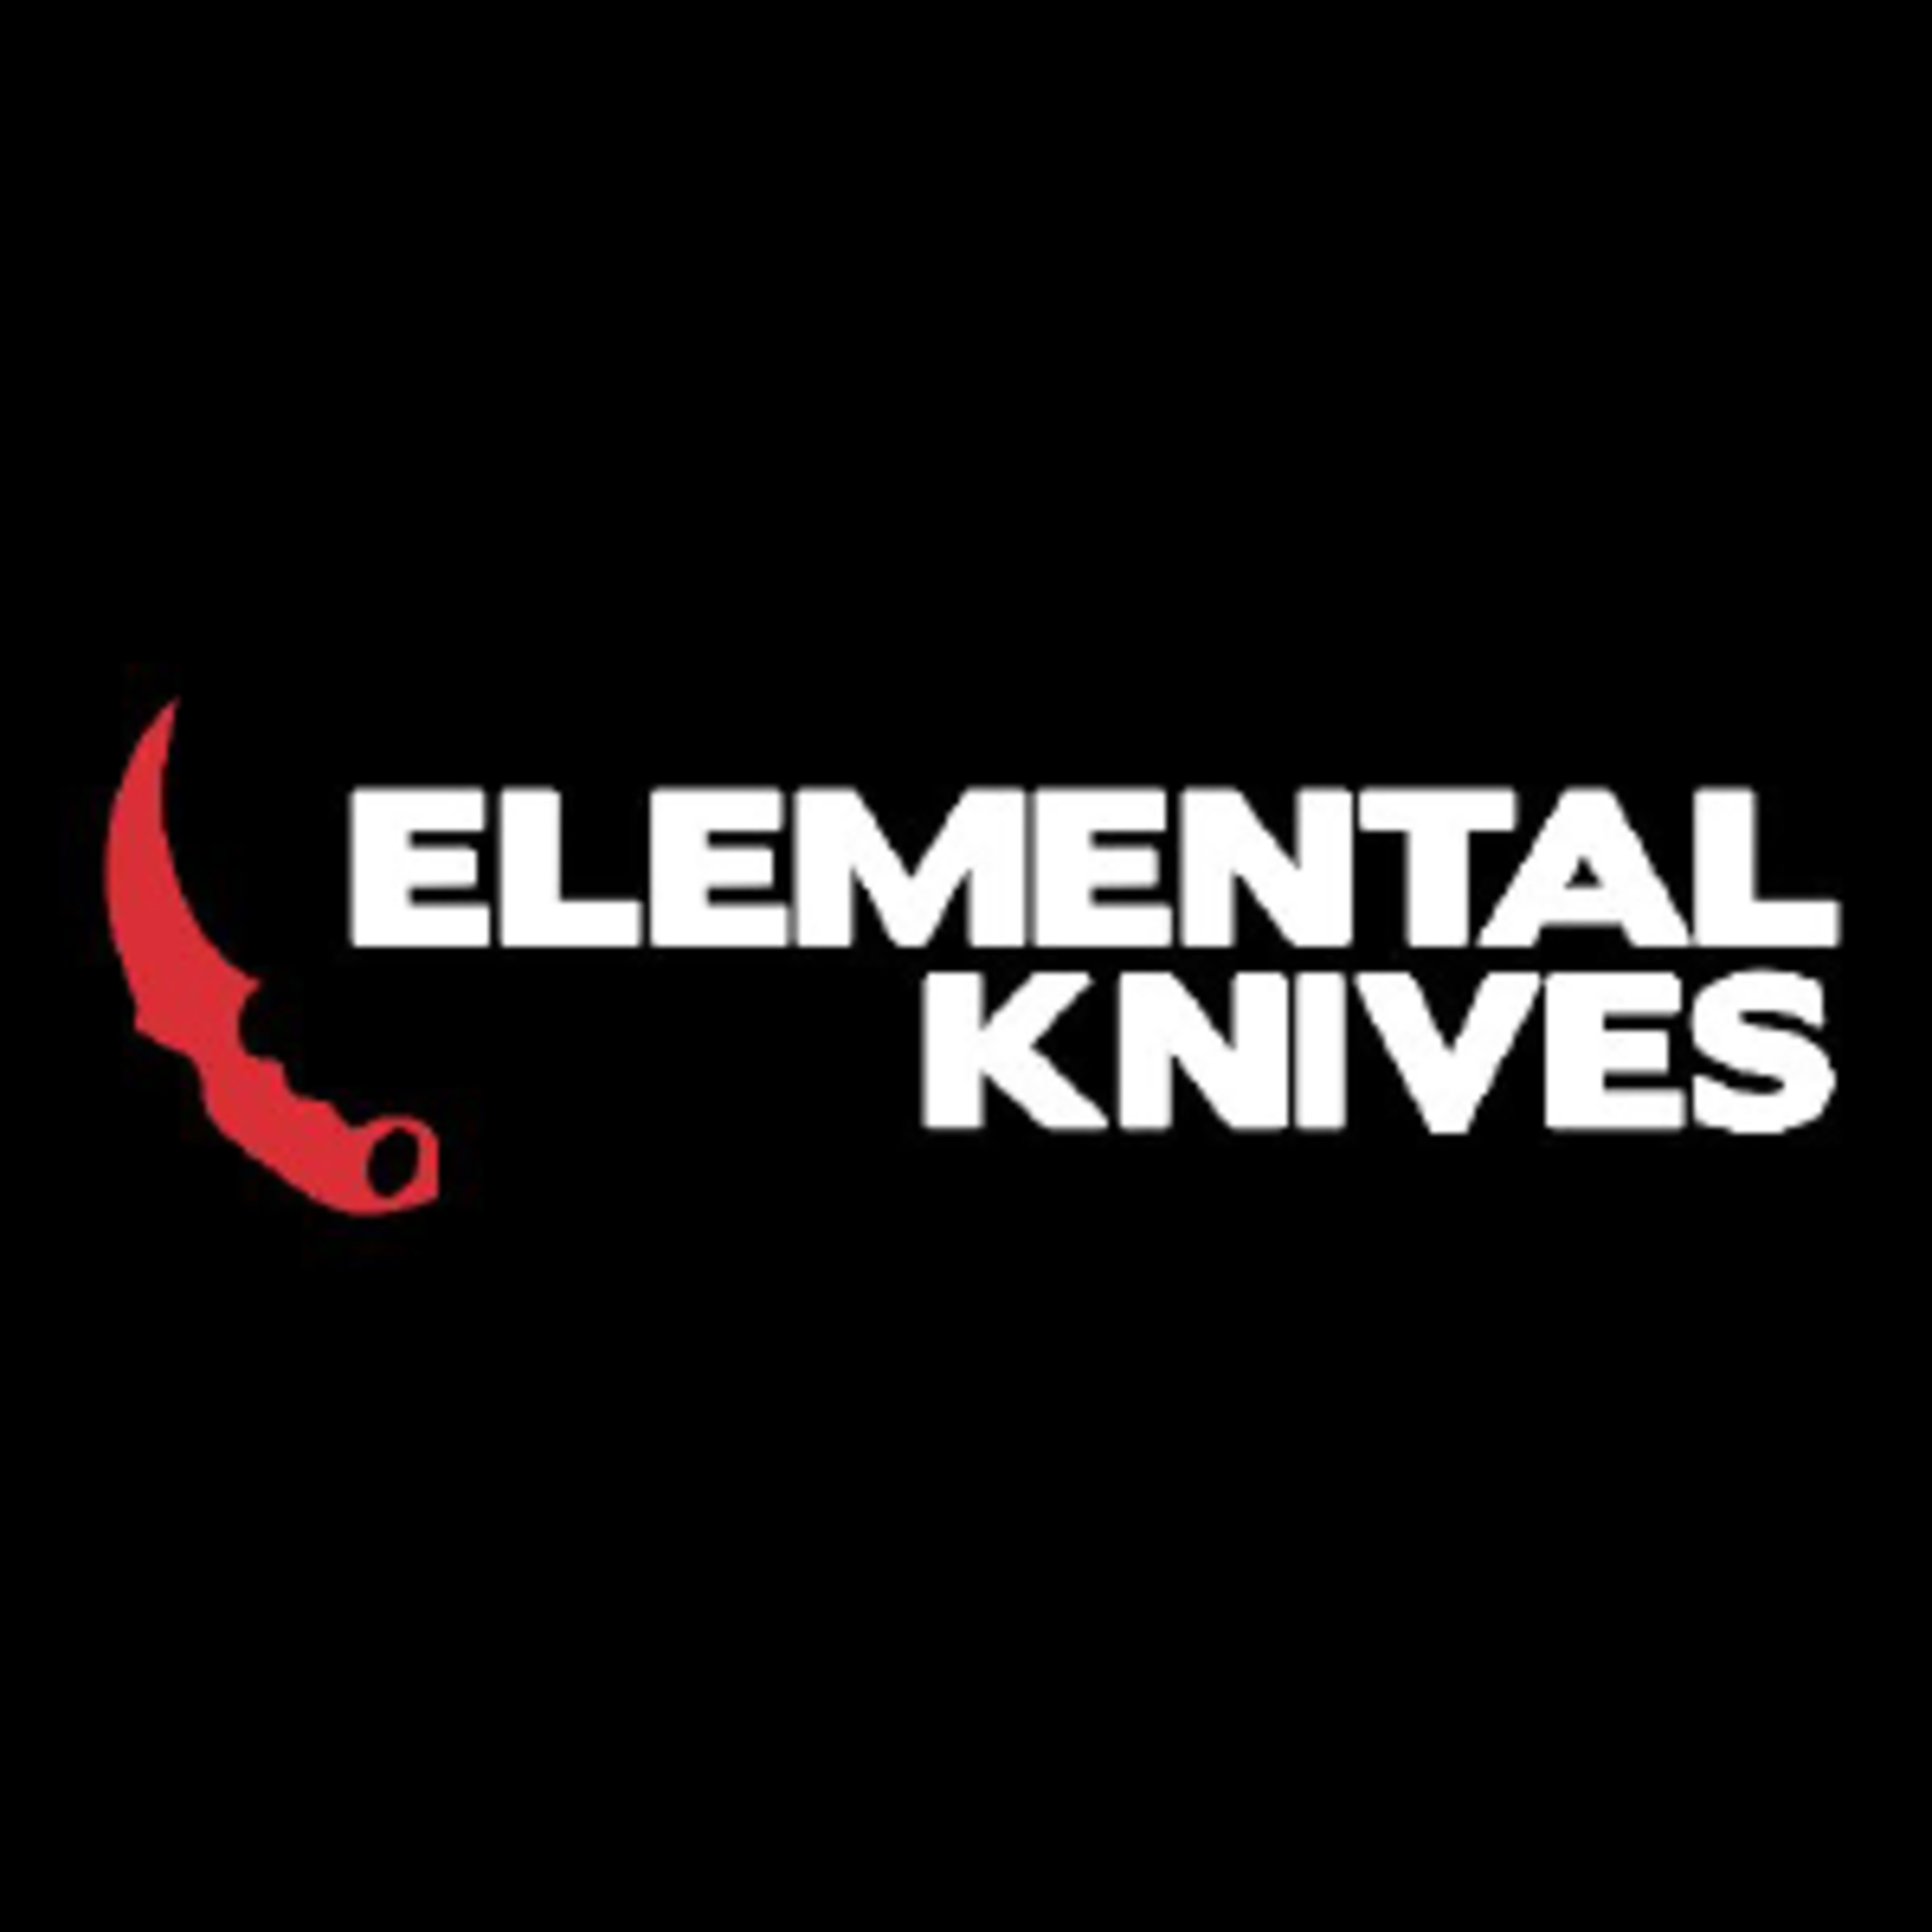 Elemental knivesCode